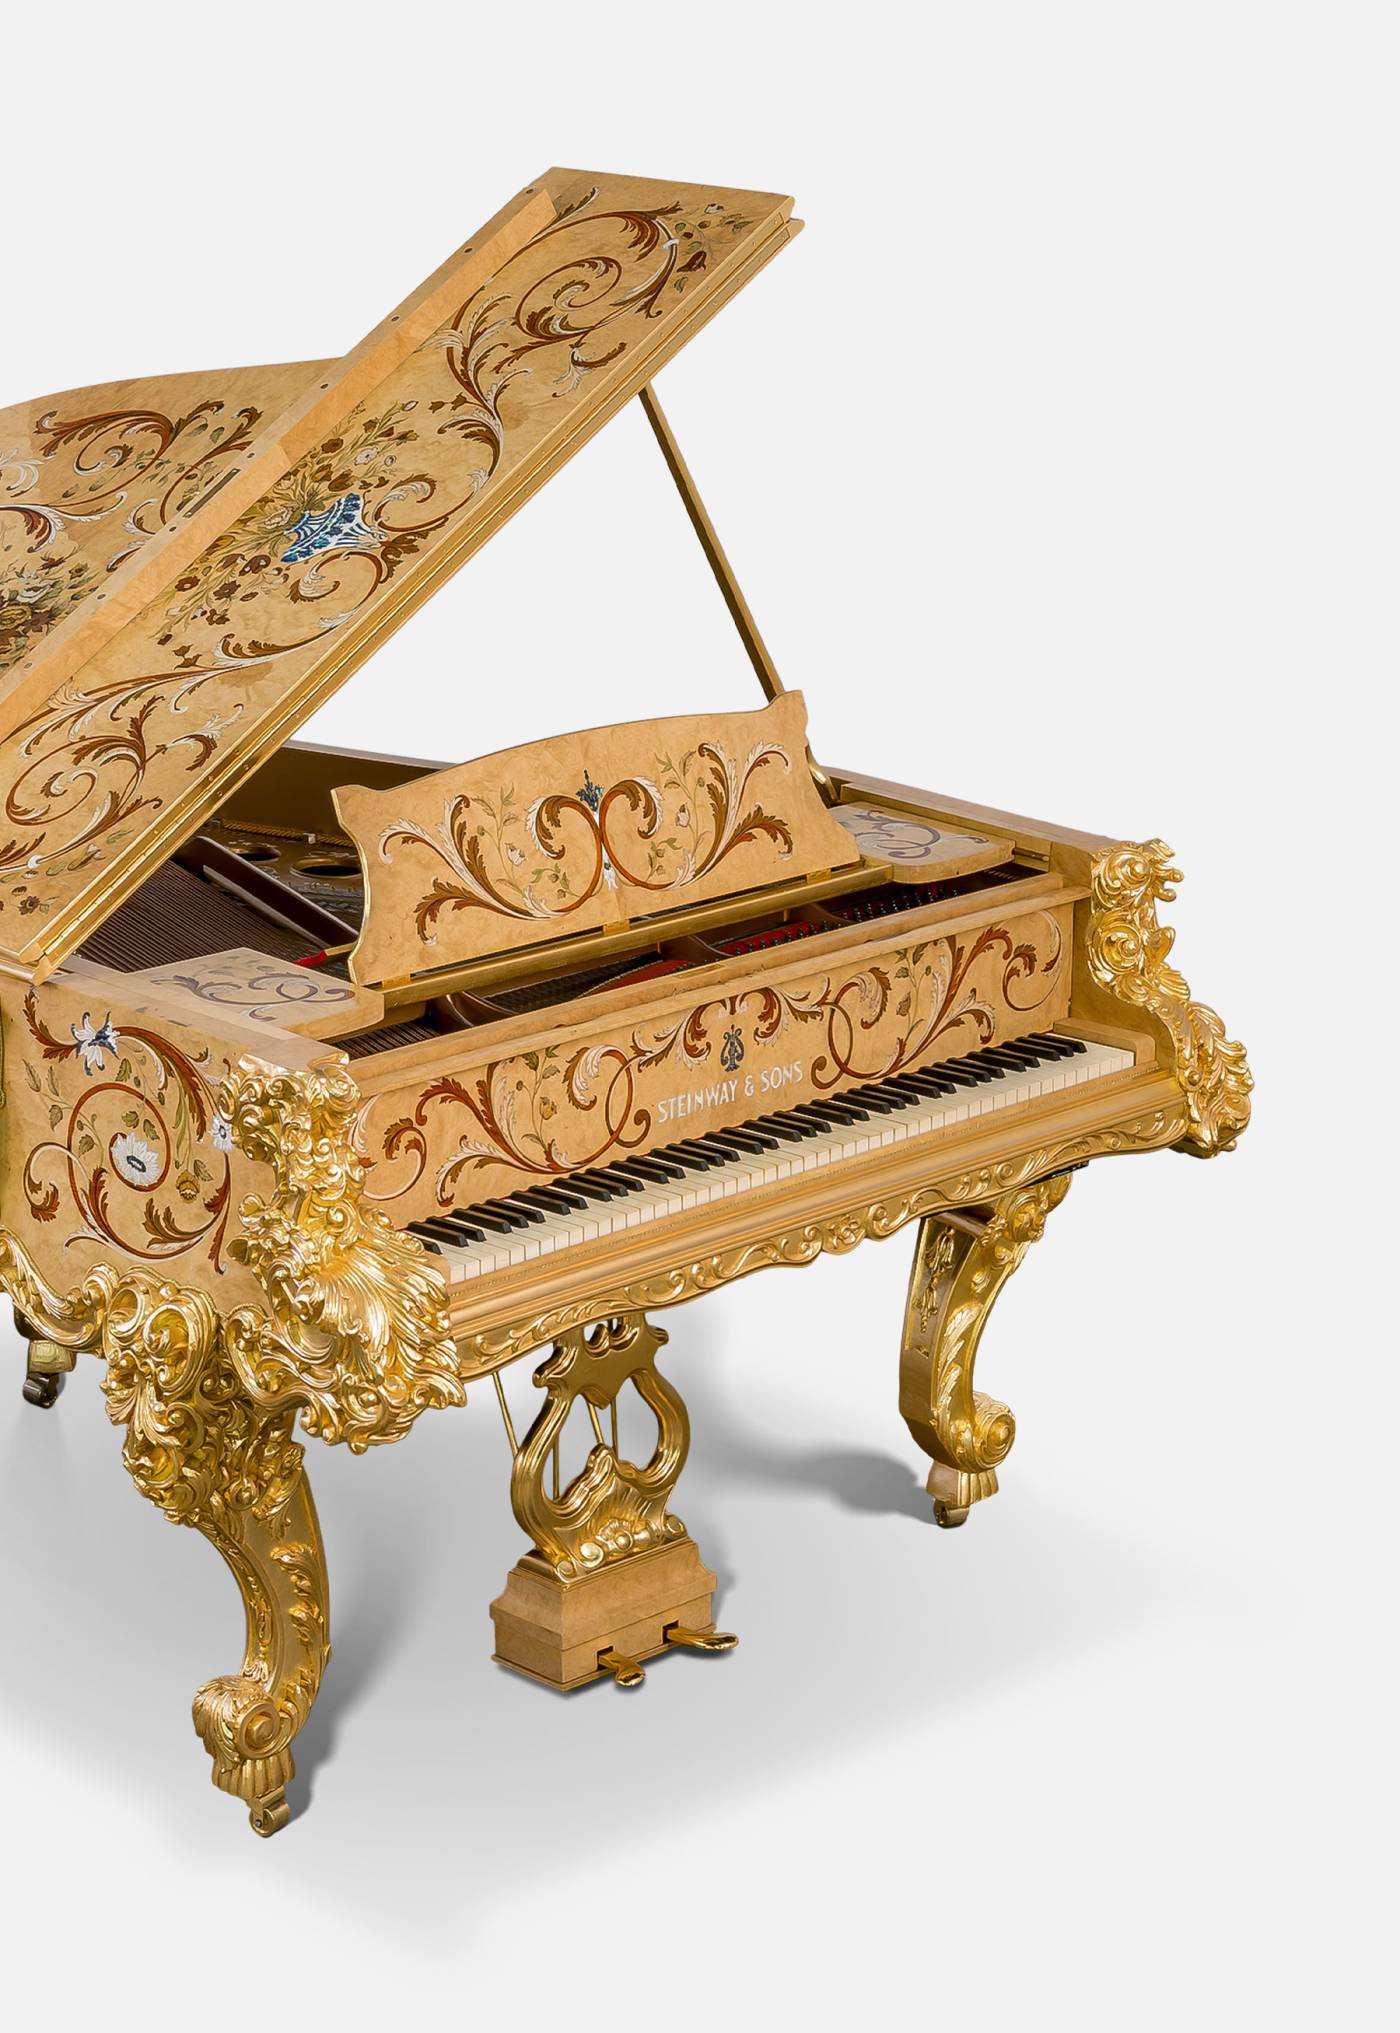 cg-capelletti-italian-luxury-forniture-pianos-01